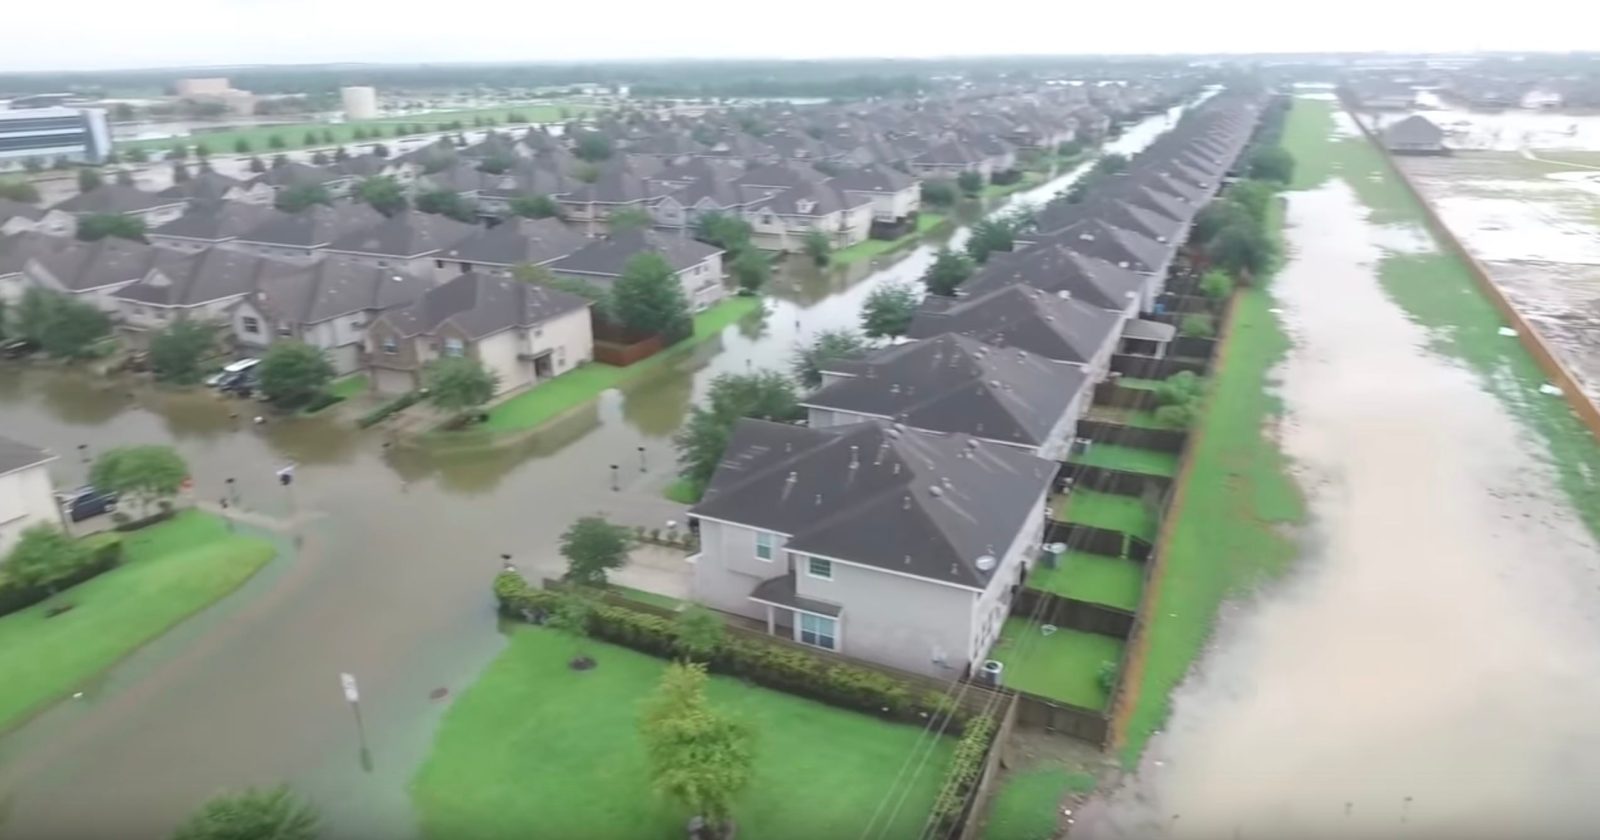 houston flood drone footage amateur harvey